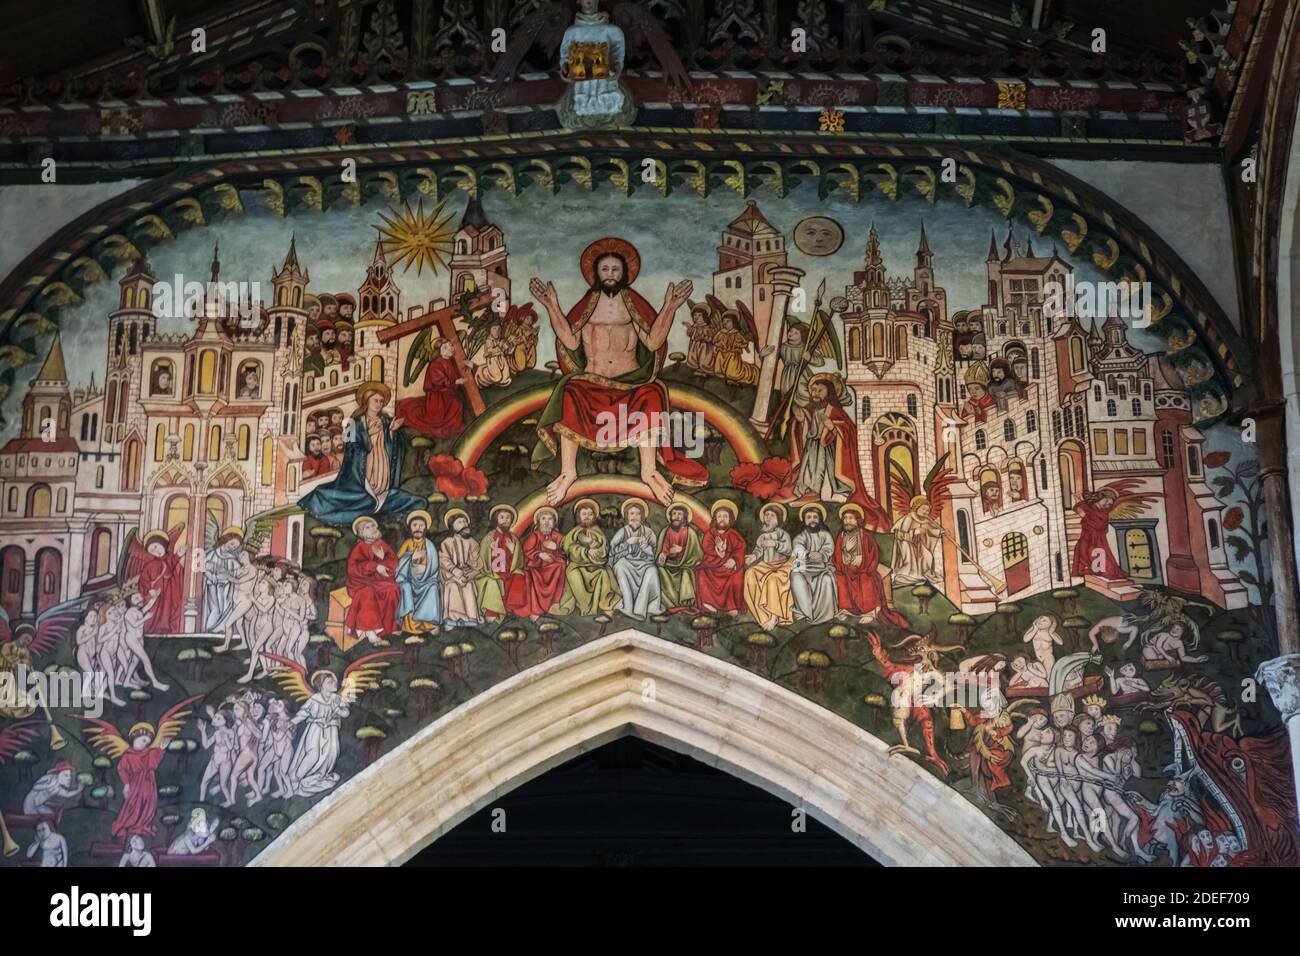 England, Wiltshire, Salisbury, Kirche St. Thomas Beckett, Innenwand Gemälde Darstellung Jesus Christus und die Jünger Stockfoto